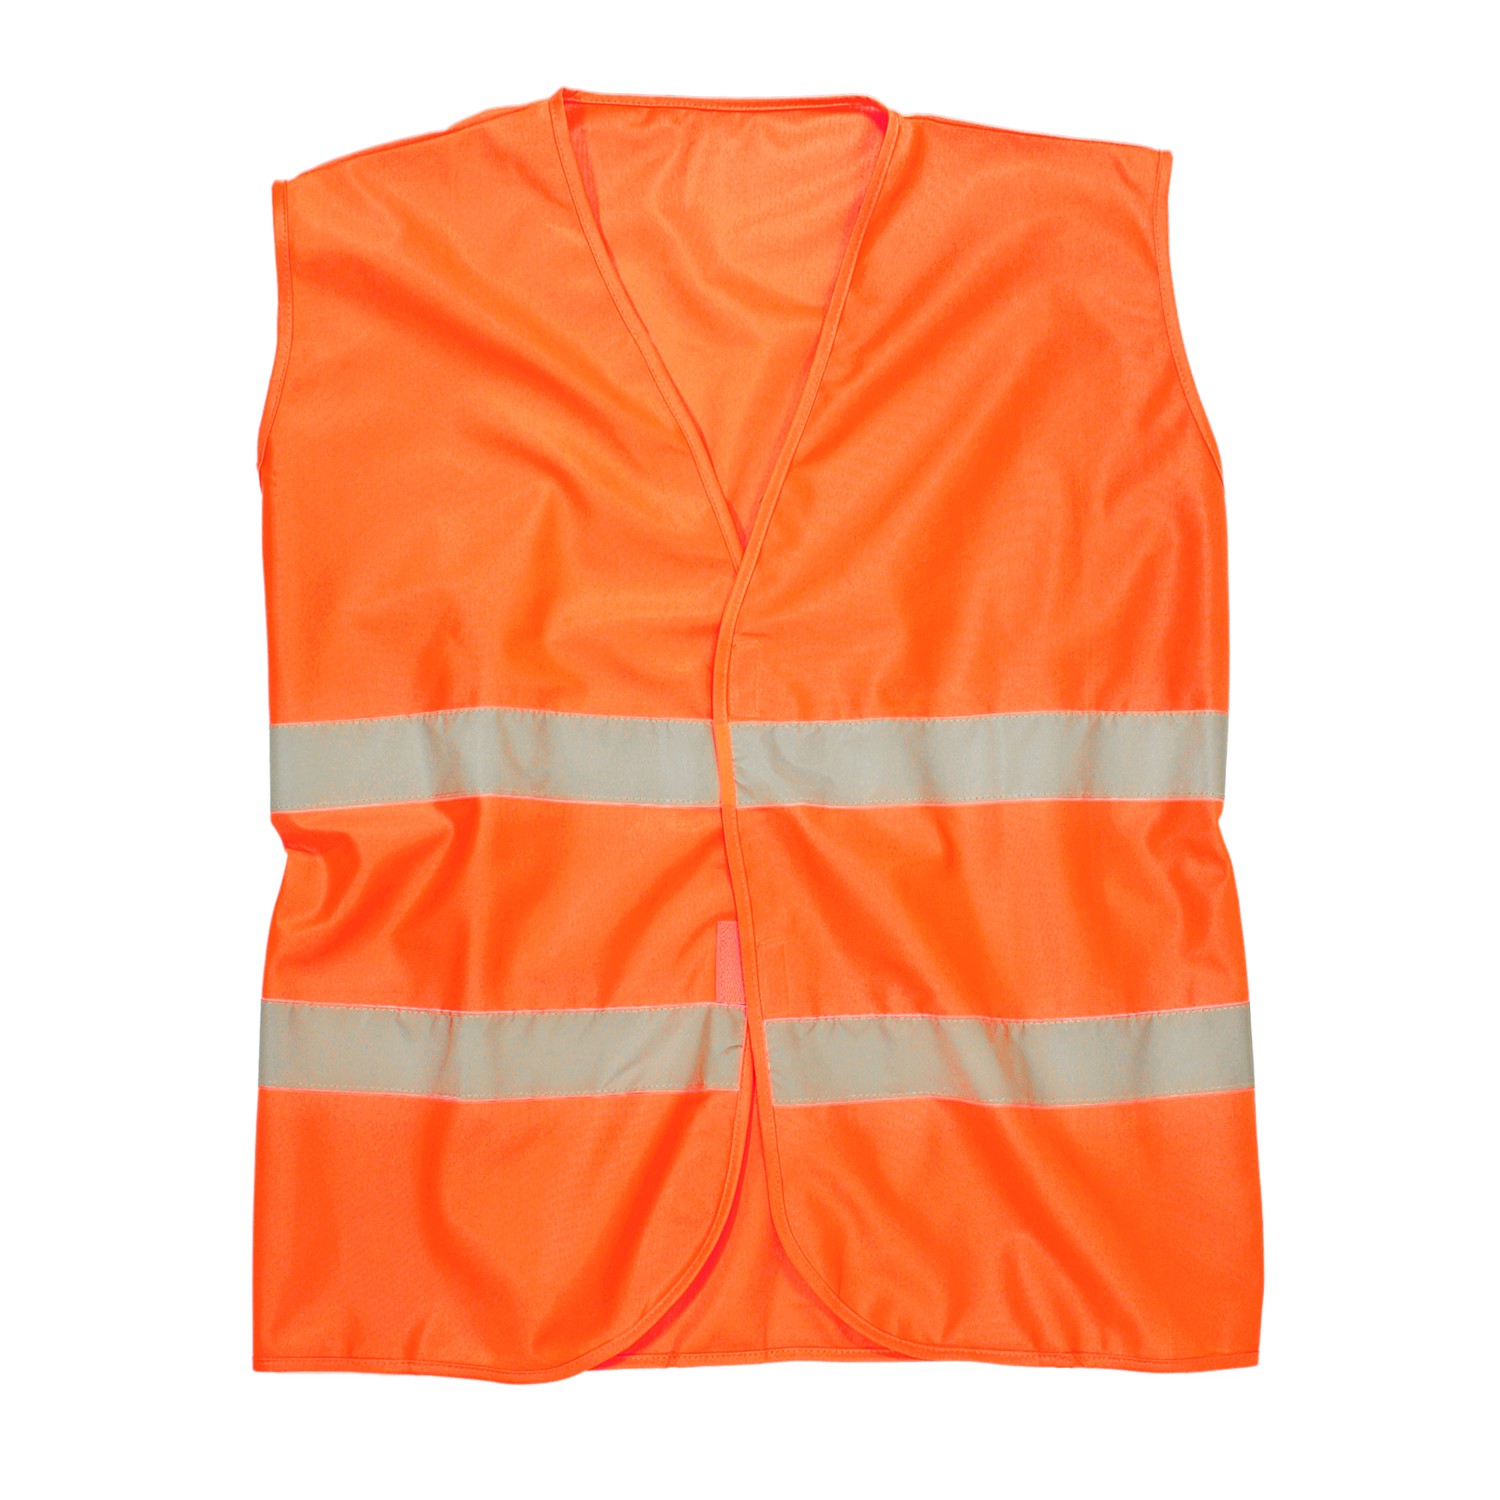 Gilet de sécurité orange haute qualité de marc&mark - grandes tailles jusqu'au 10XL